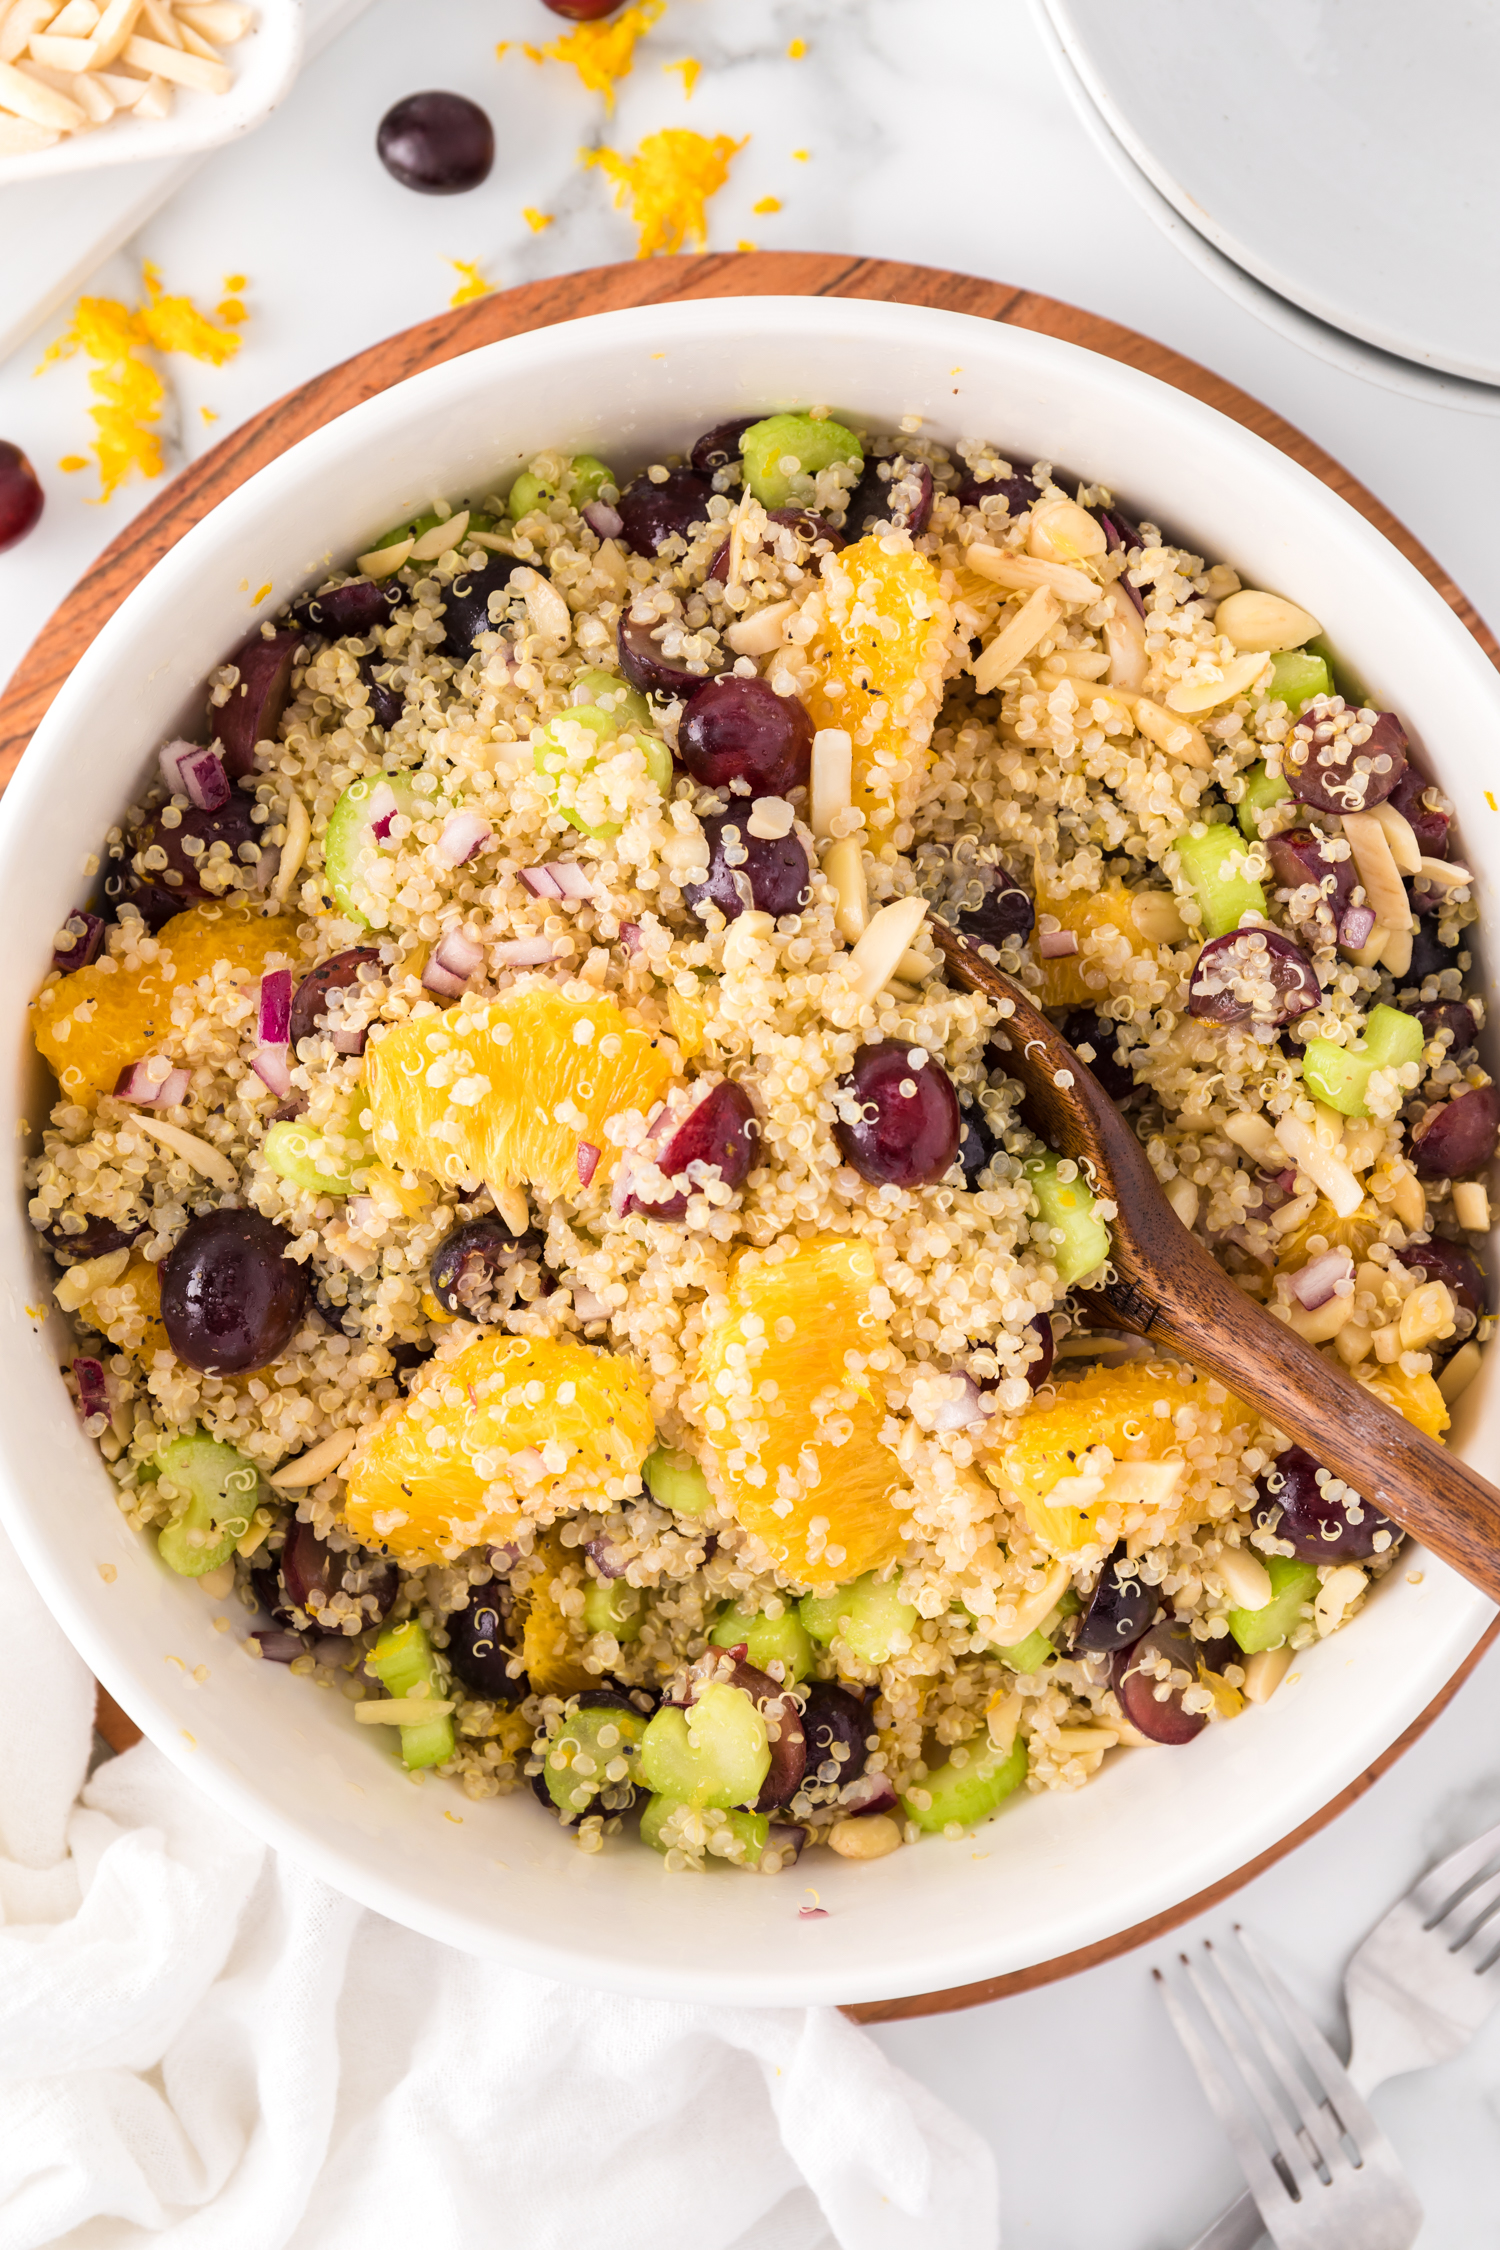 Salade de quinoa dans un grand bol, avec oranges, raisins, amandes.